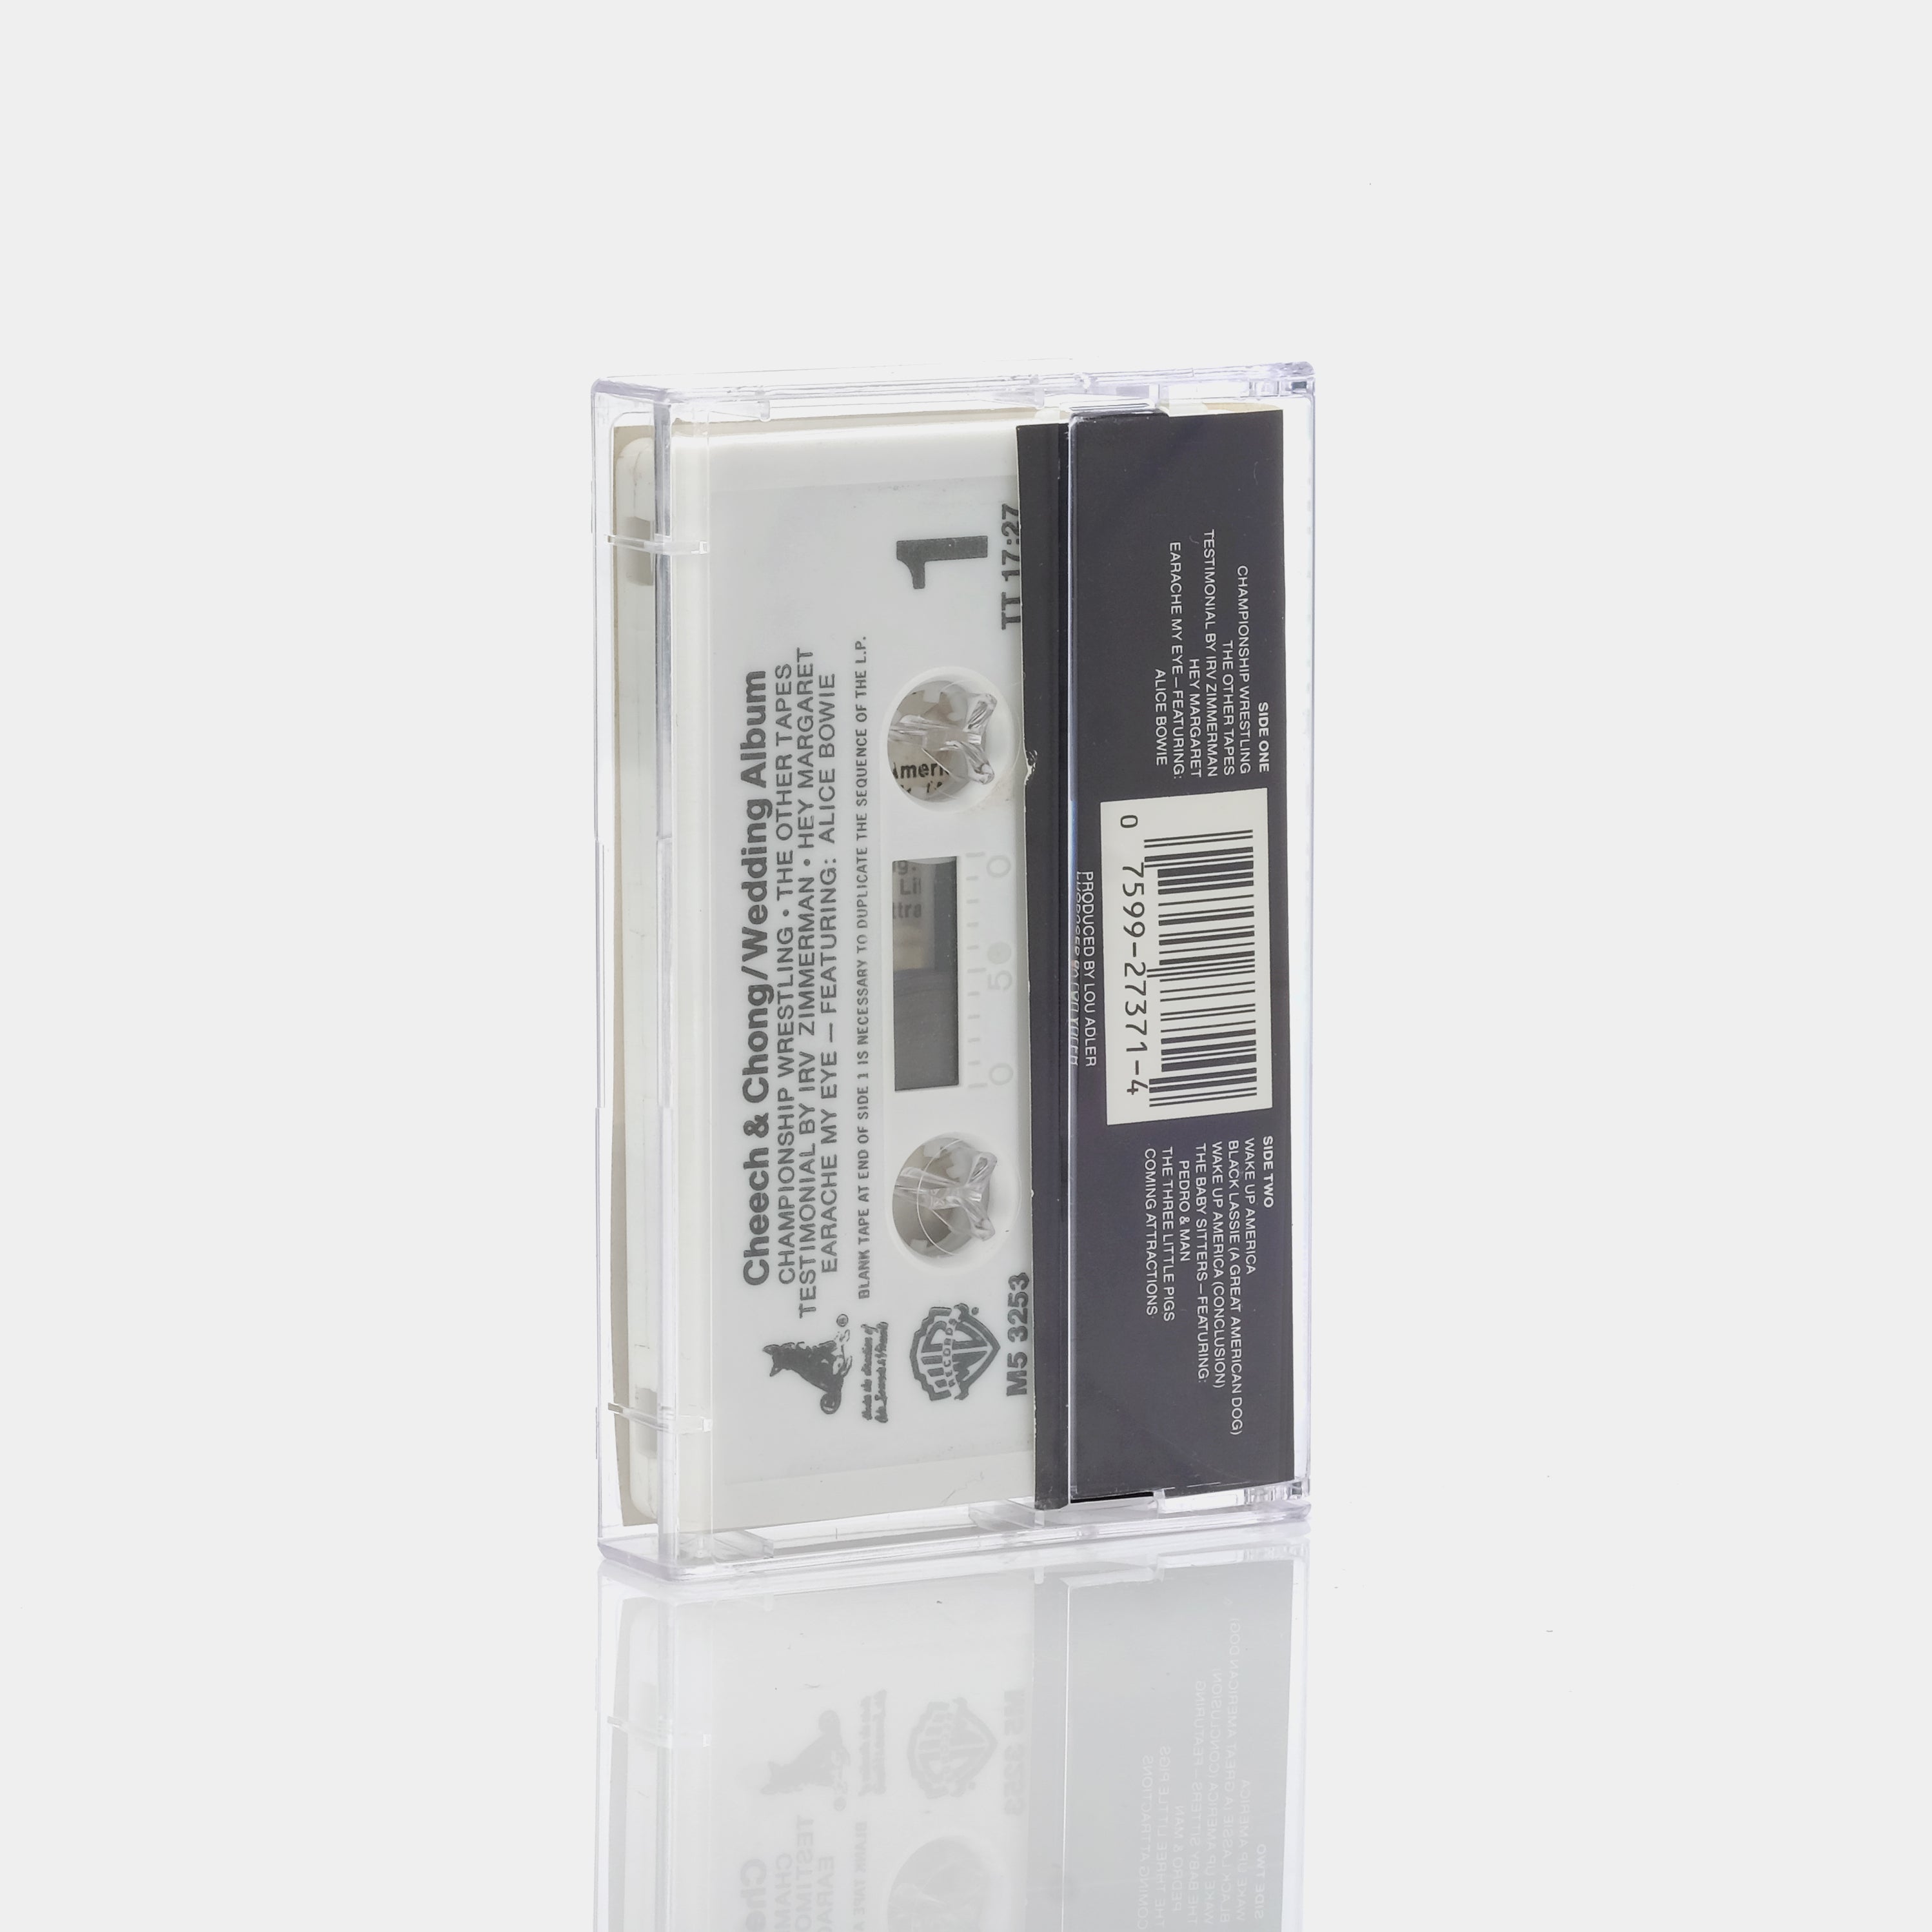 Cheech & Chong - Cheech & Chong's Wedding Album Cassette Tape